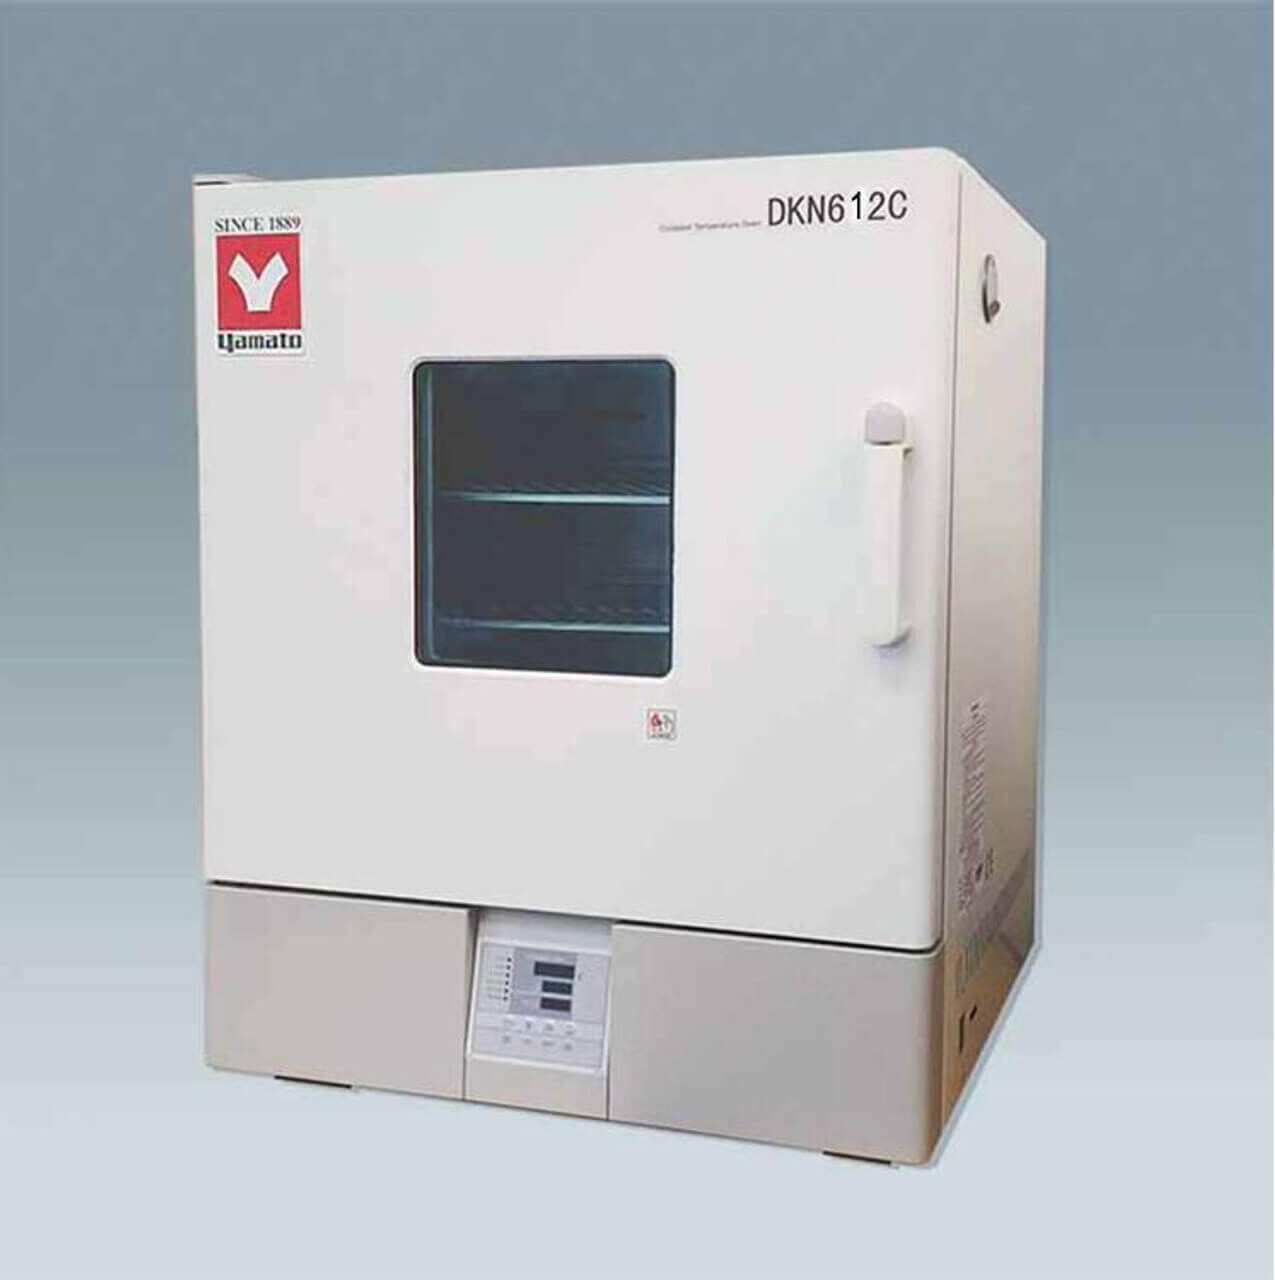 Шкаф сушильный YAMATO DKN612C (150 л, до +250 °C)